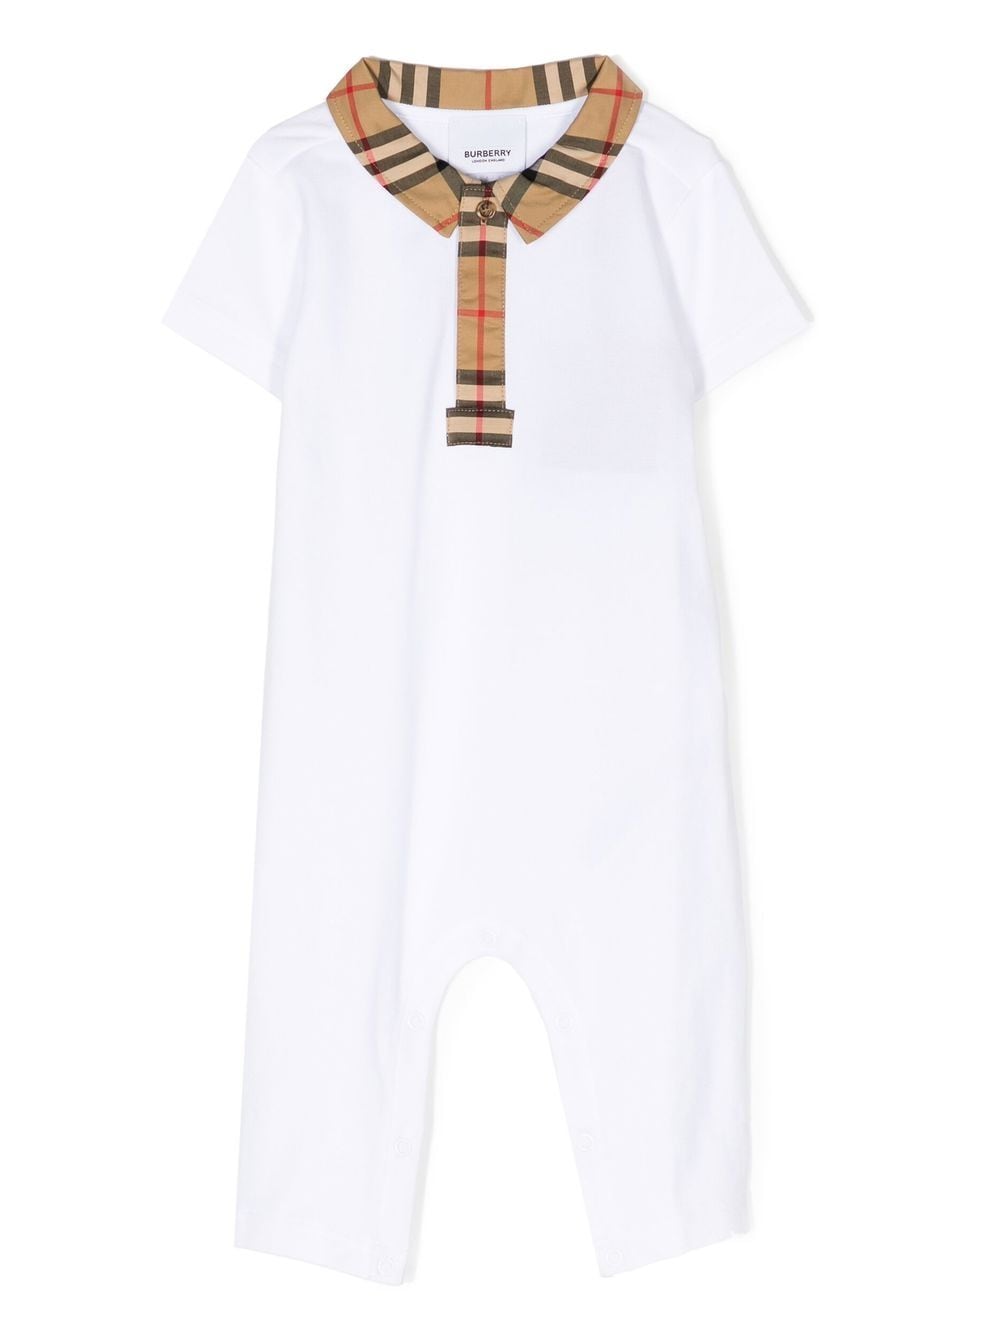 White pajamas for newborns